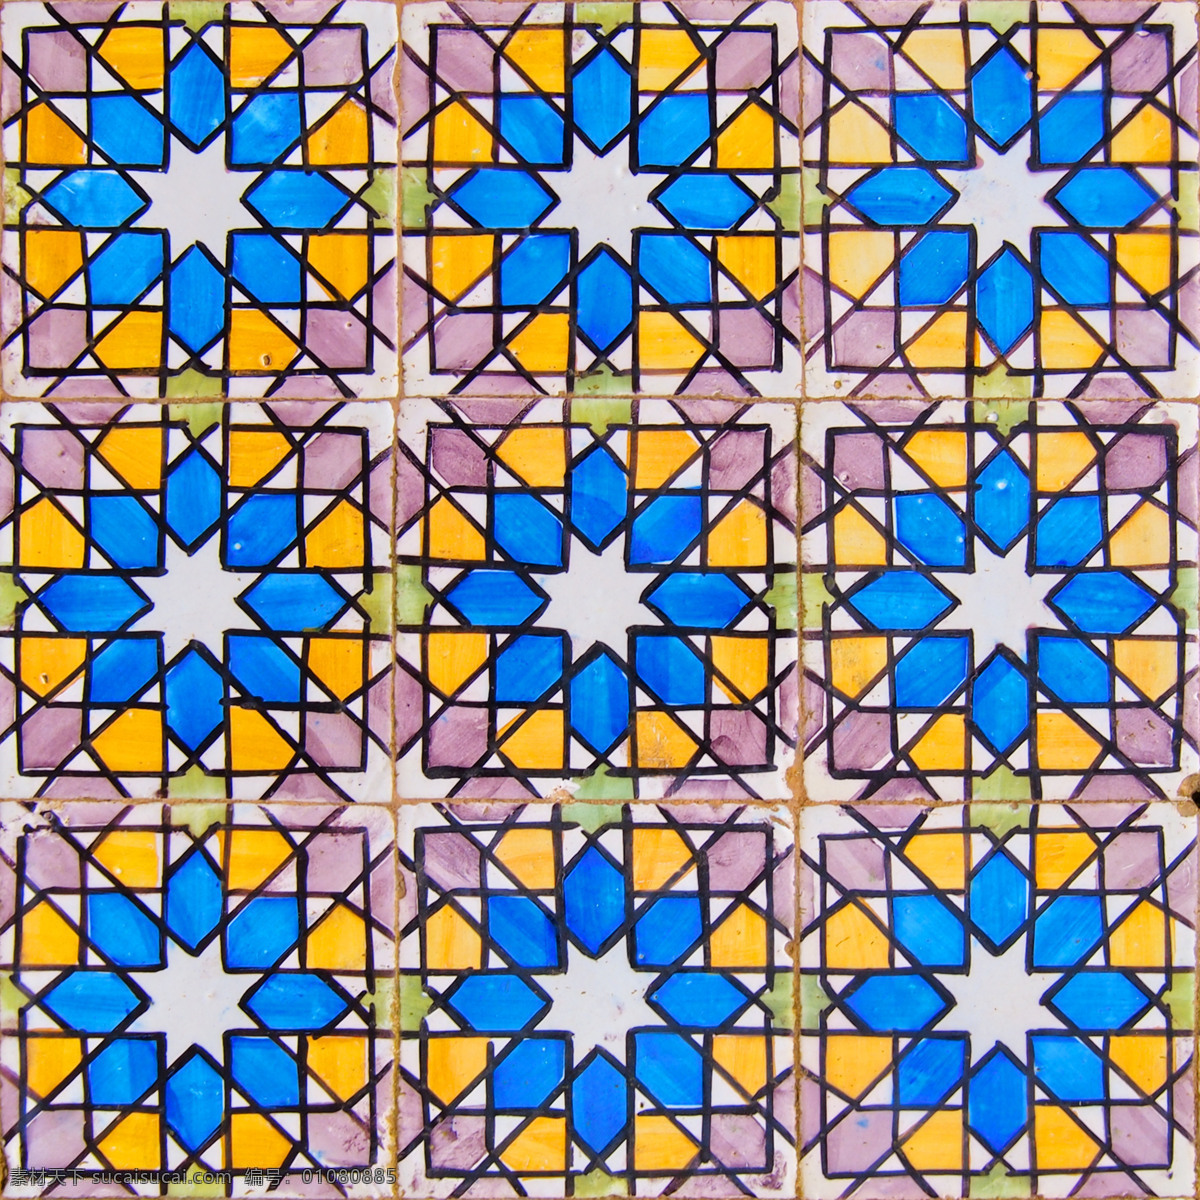 彩色花型地砖 彩色 花型 地砖 瓷砖 图案 建筑设计 其他类别 生活百科 蓝色